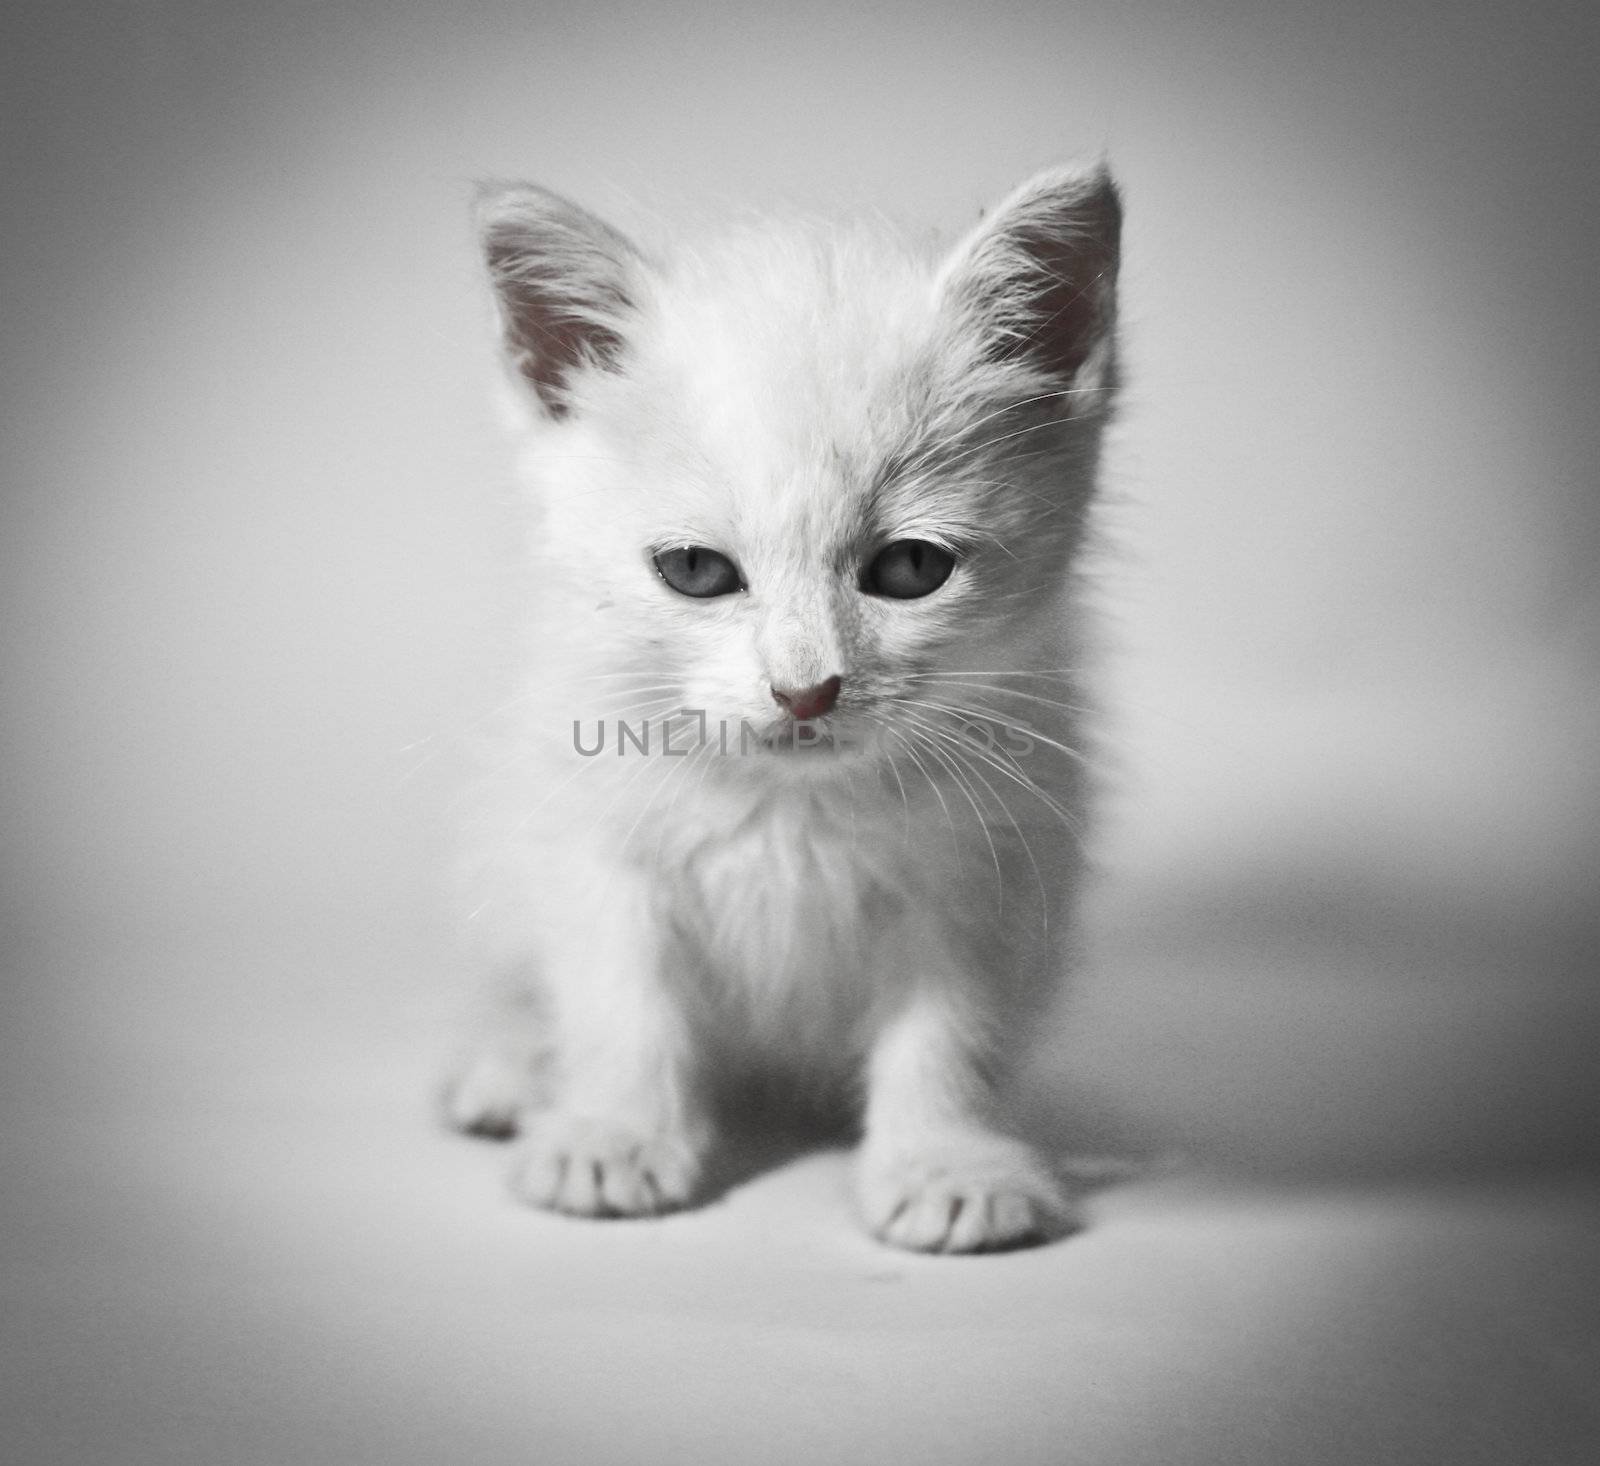  siberian kitten on white background 